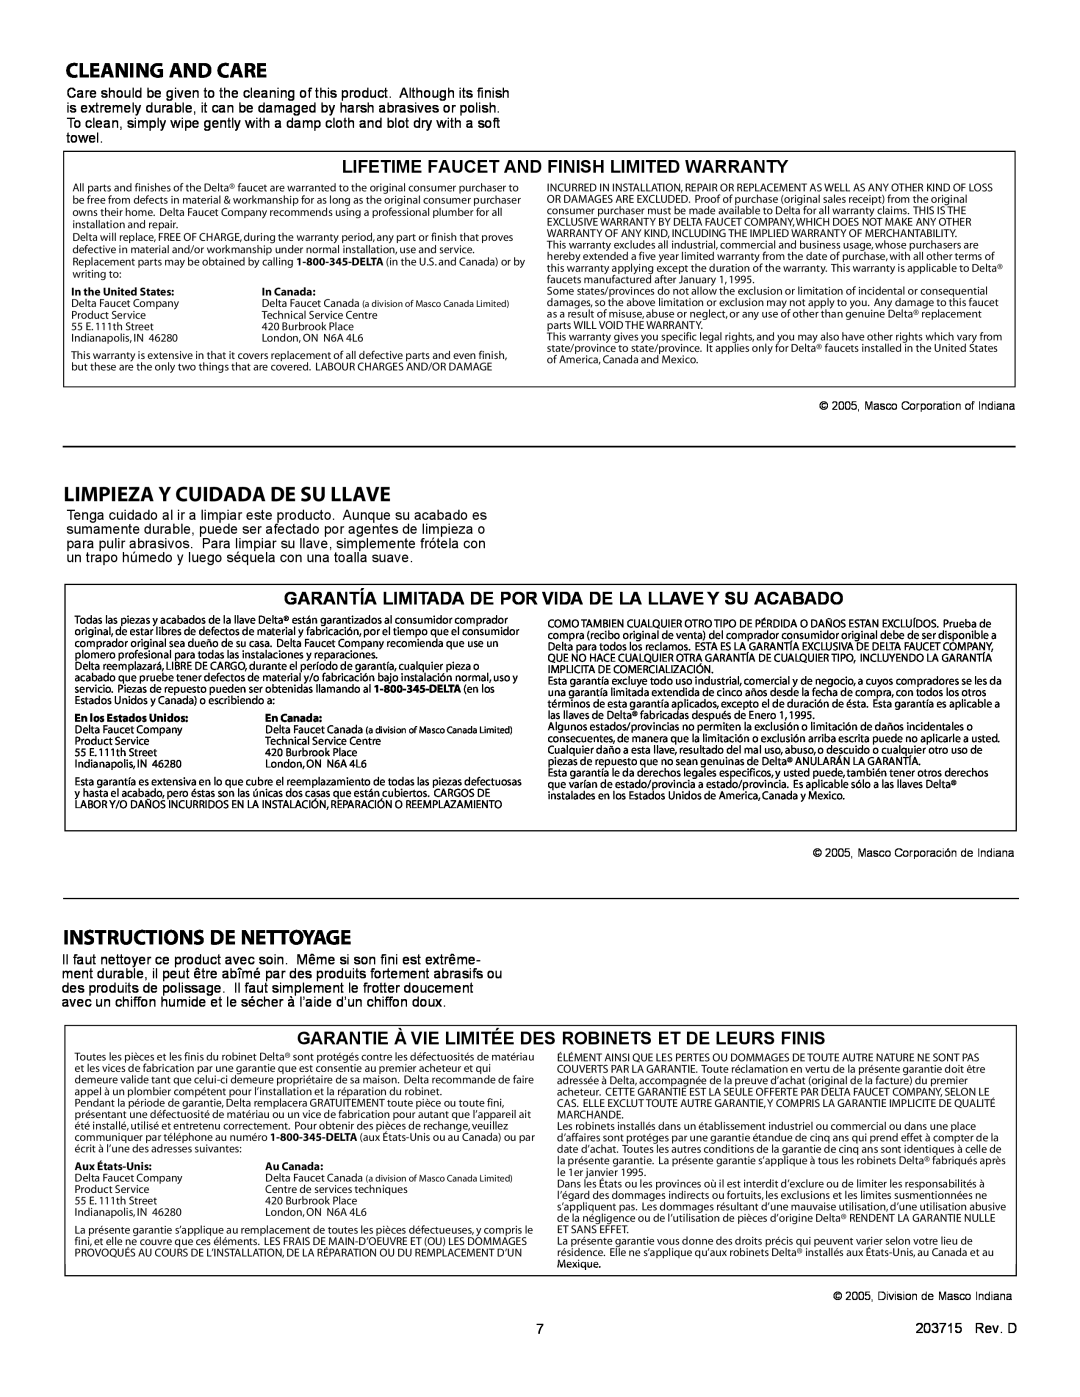 Delta 985 Series manual Cleaning And Care, Limpieza Y Cuidada De Su Llave, Instructions De Nettoyage 